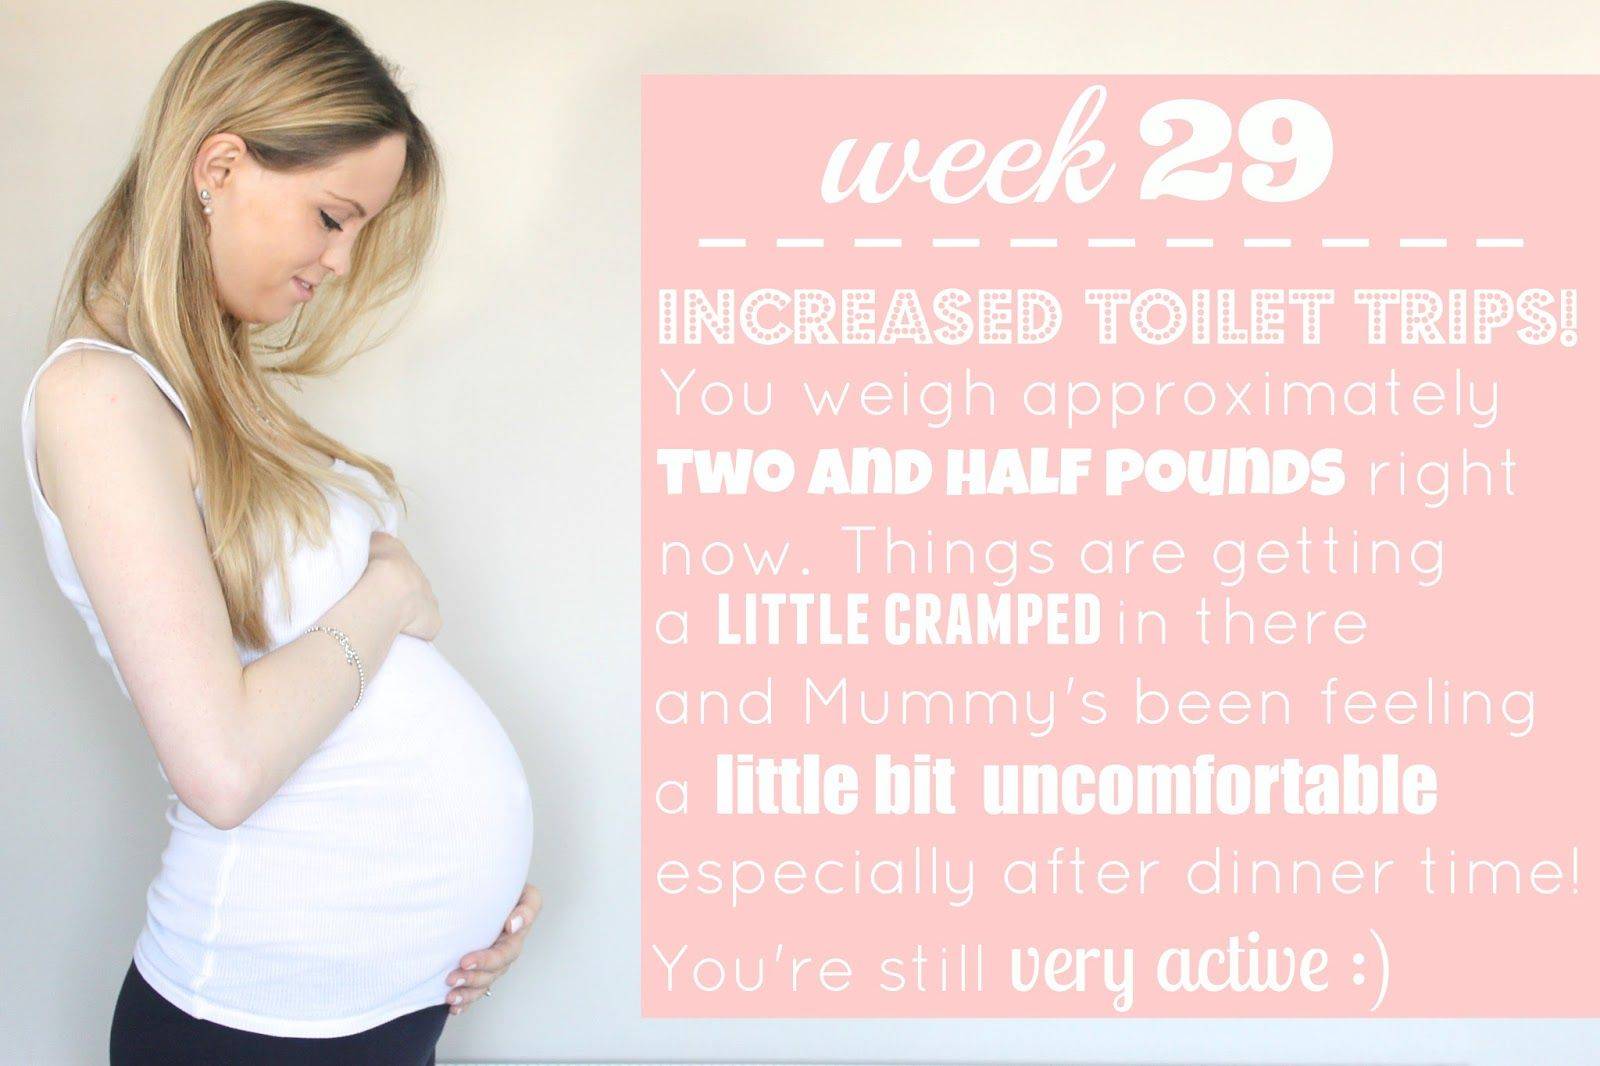 Как выглядит плод на узи обследовании на 29 неделе беременности?